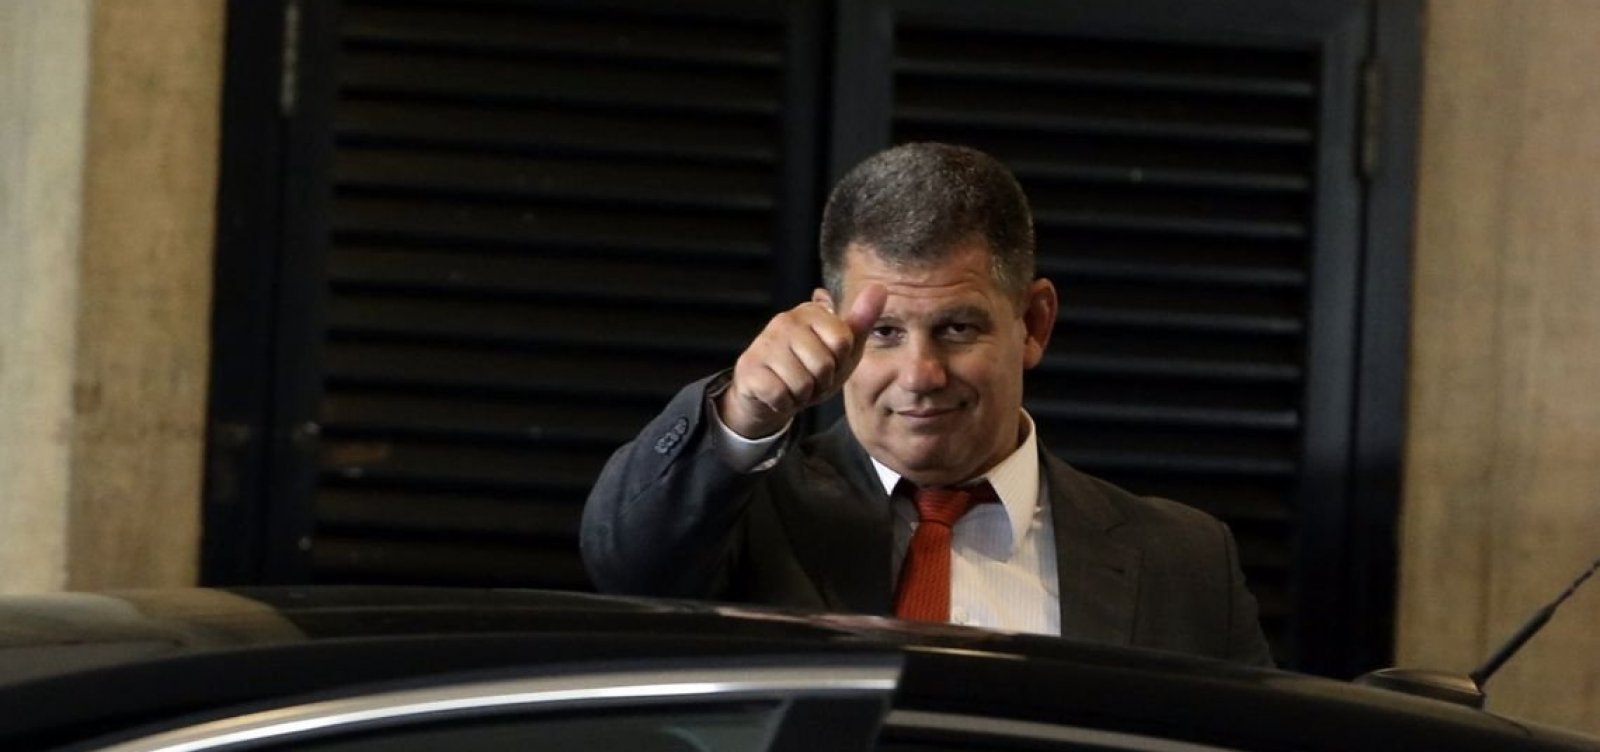 Magoado, Bebianno não vai poupar filho de Bolsonaro, diz jornal